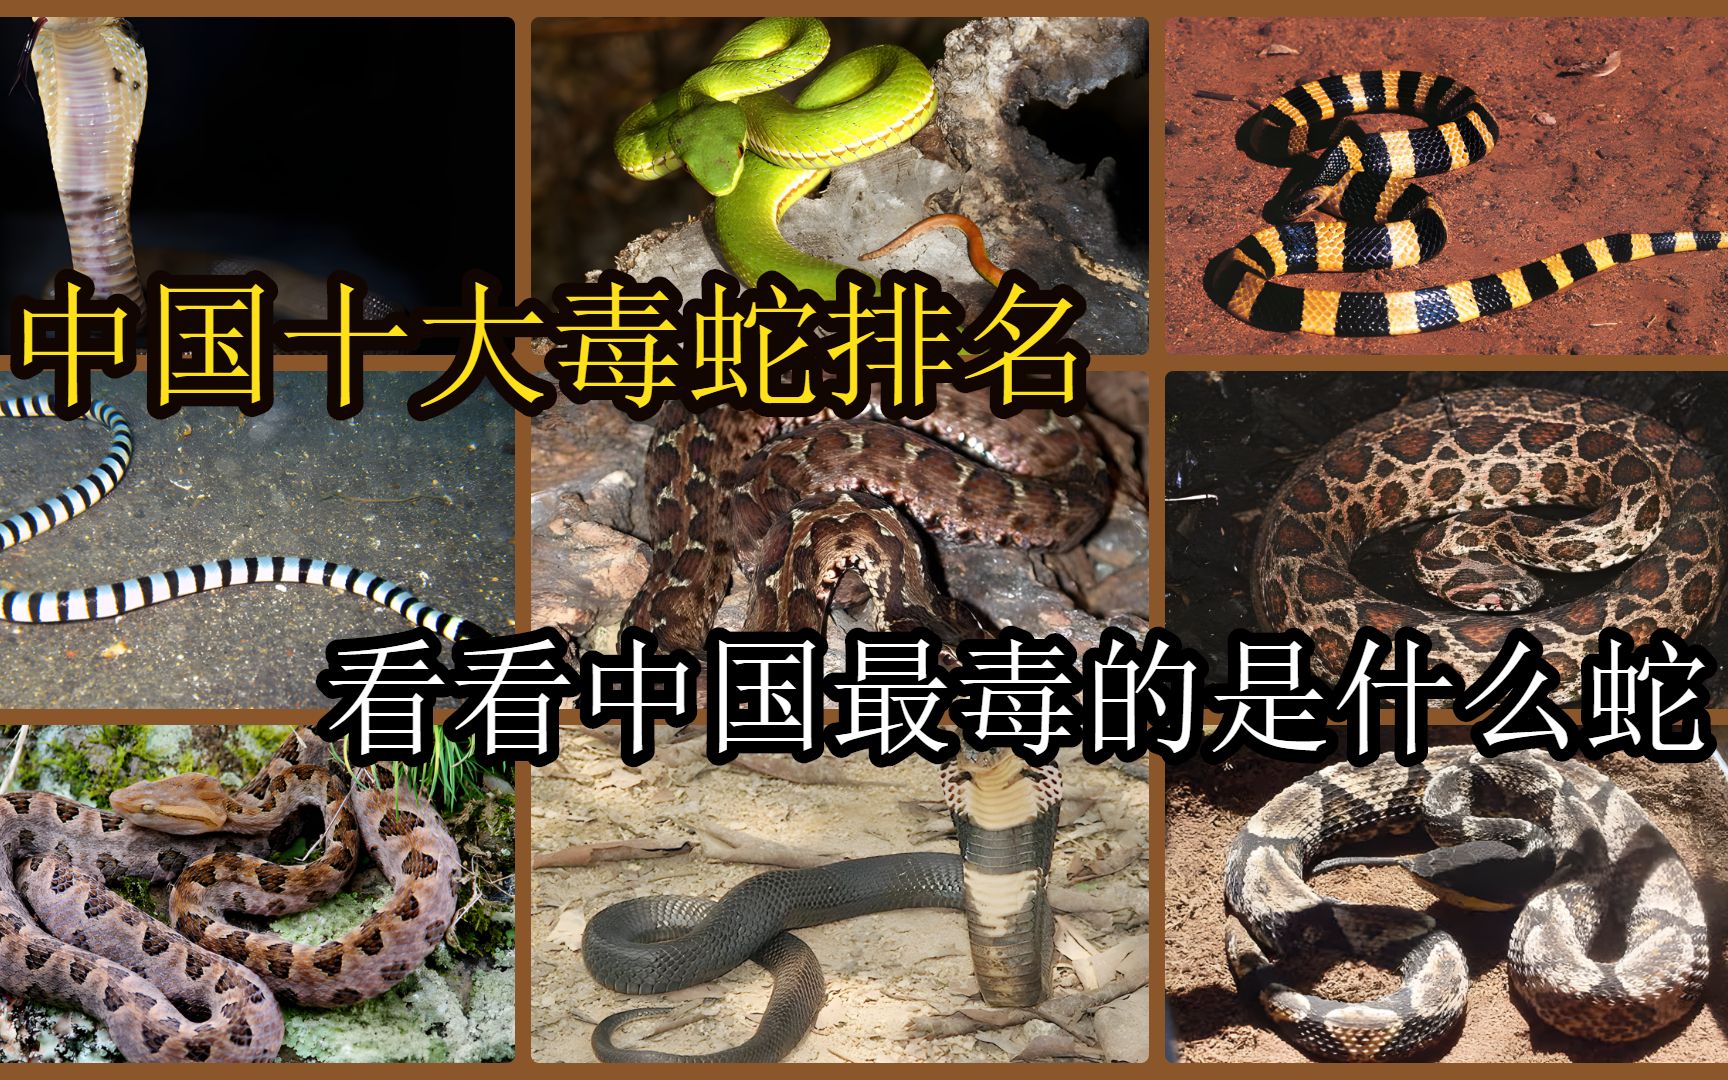 中国十大毒蛇排名,看看中国最毒的蛇是什么蛇?